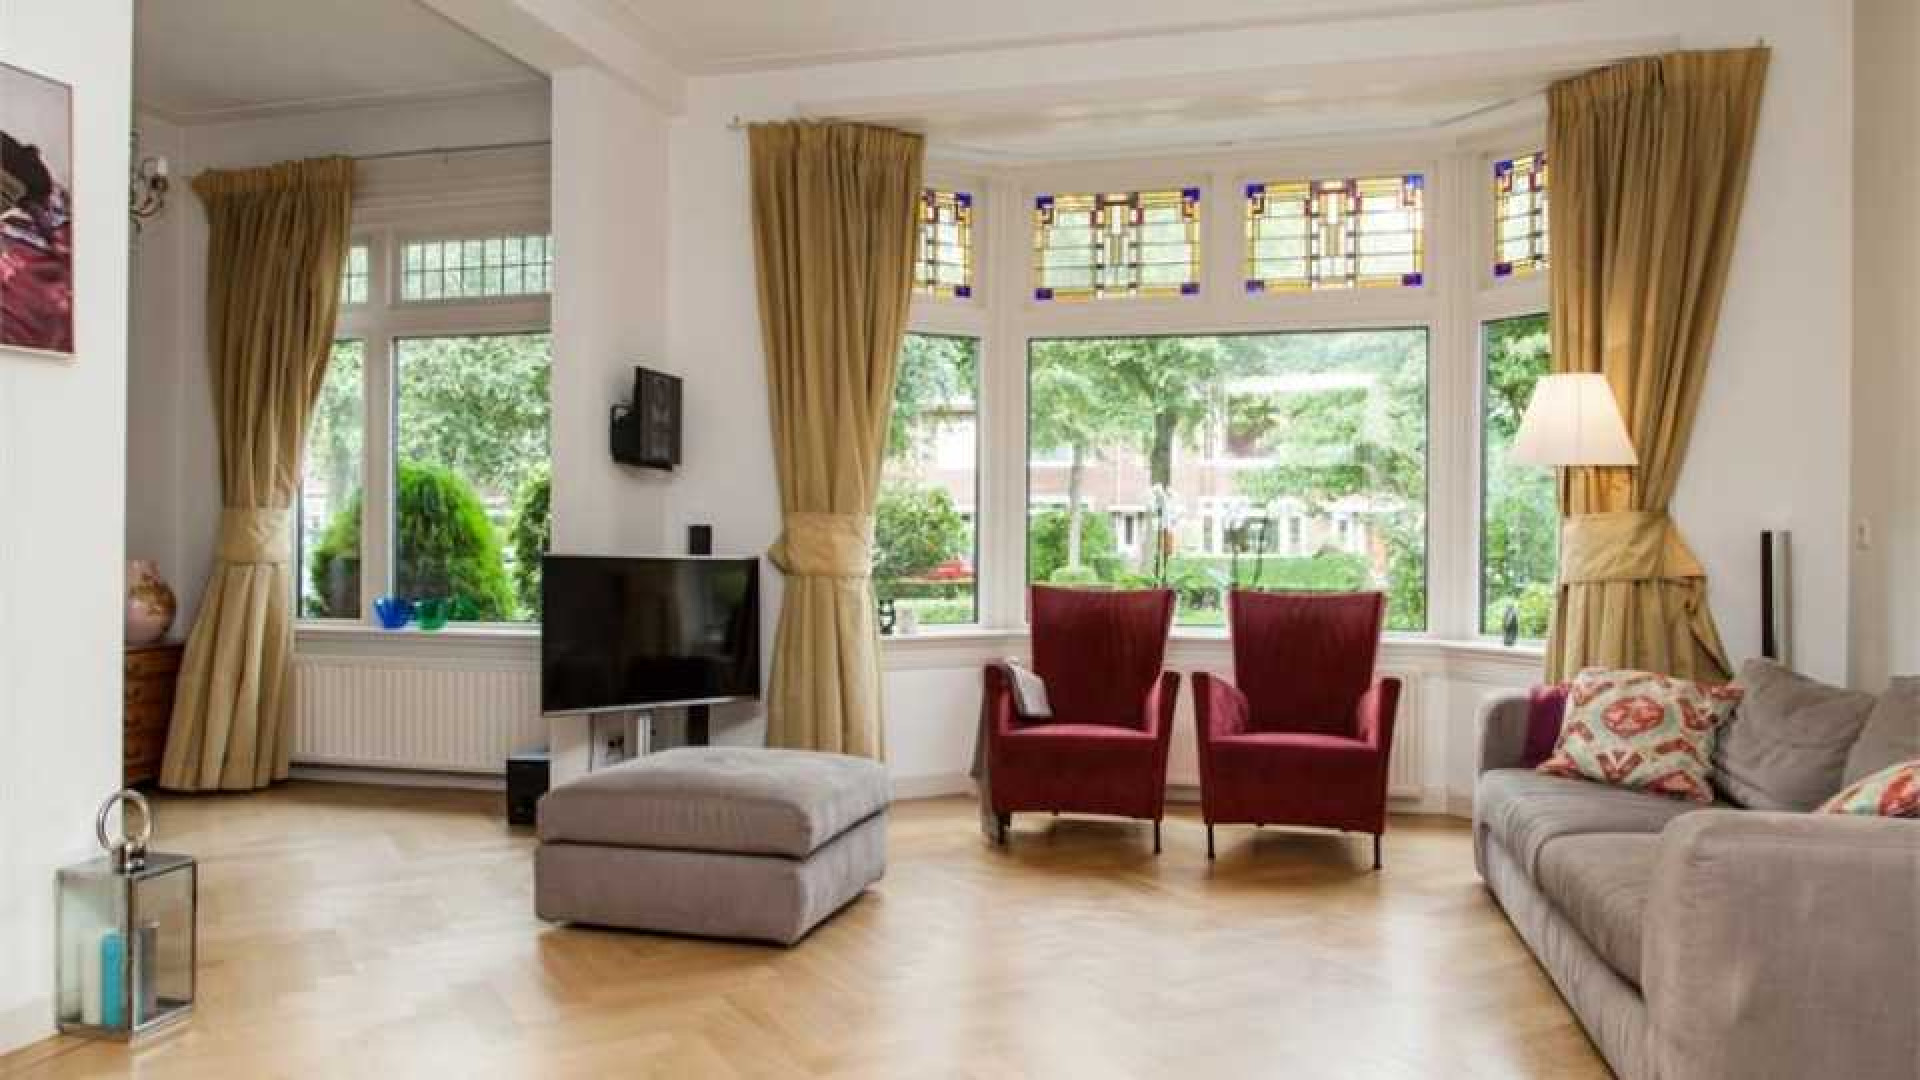 Alberto Stegeman koopt uit eigen zak voor bijna 1 miljoen villa in Heemstede. Zie foto's